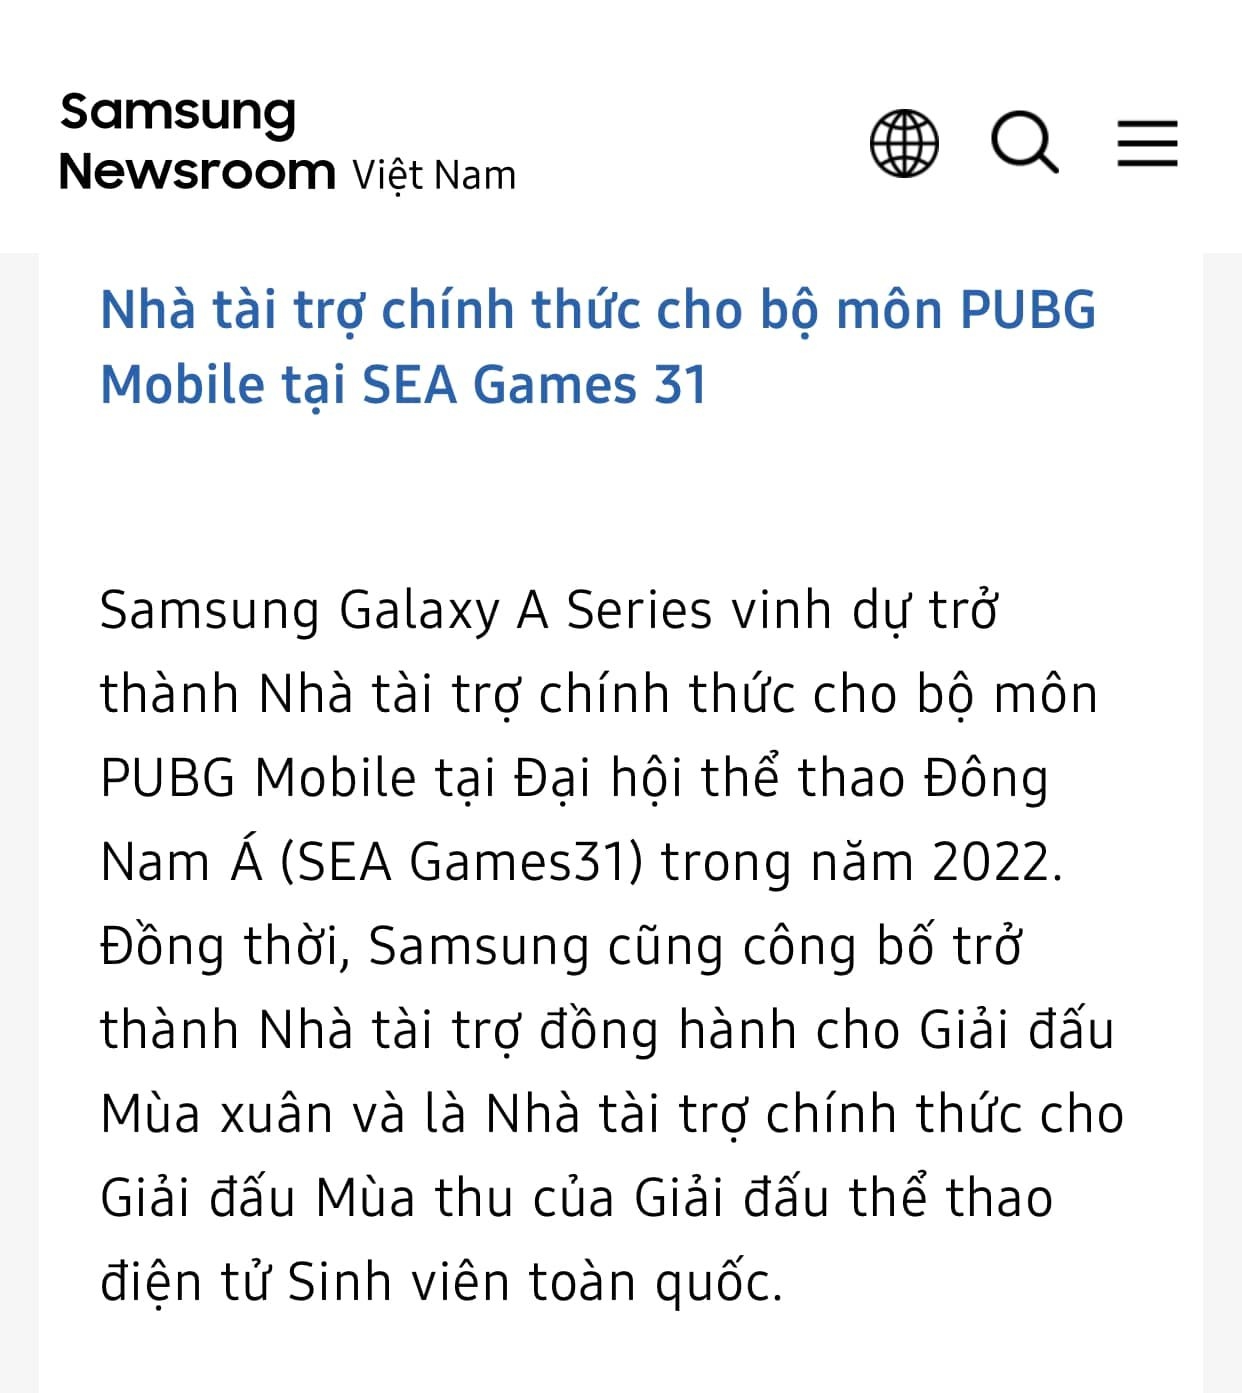 CĐM sốc khi biết điện thoại Free Fire được sử dụng tại SEA Games 31, tuyển thủ PUBG Mobile “chỉ biết khóc” - Ảnh 2.